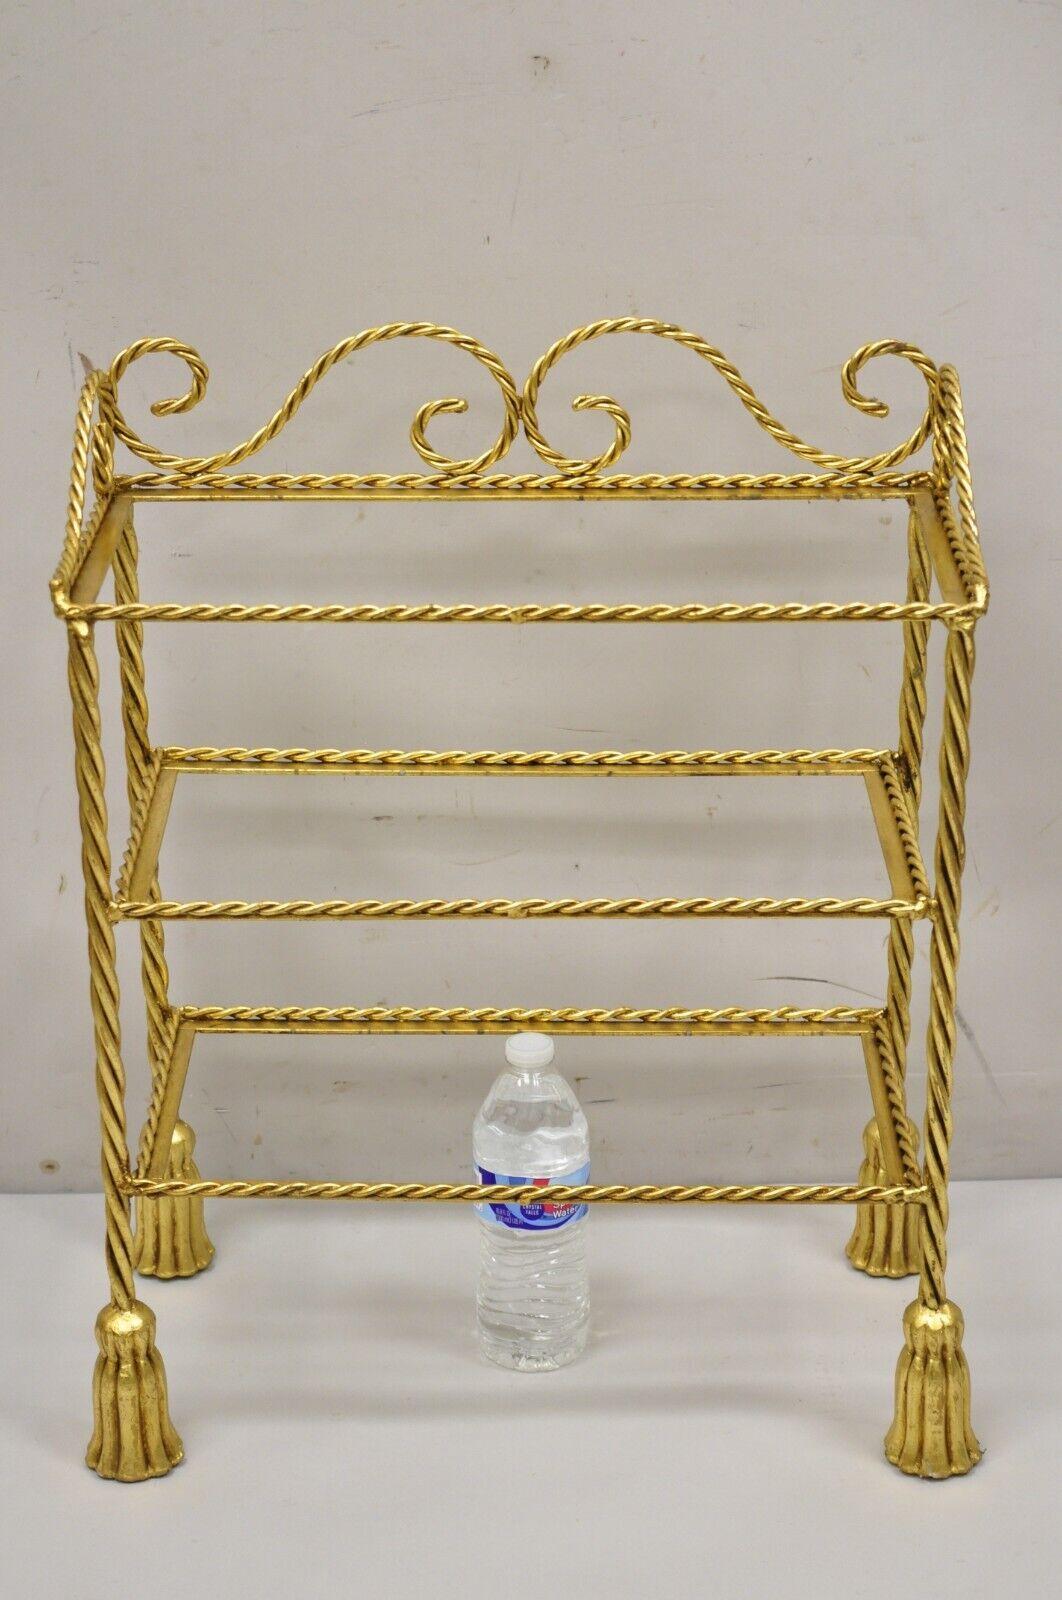 Vintage Italian Hollywood Regency Gold Gilt Iron 3 Tier Shelf Small Curio Display Stand (B). L'article présenté est de petite taille, 3 niveaux, (pas de verre pour les étagères), cadre en corde, pieds en forme de houppe, construction en fer forgé,